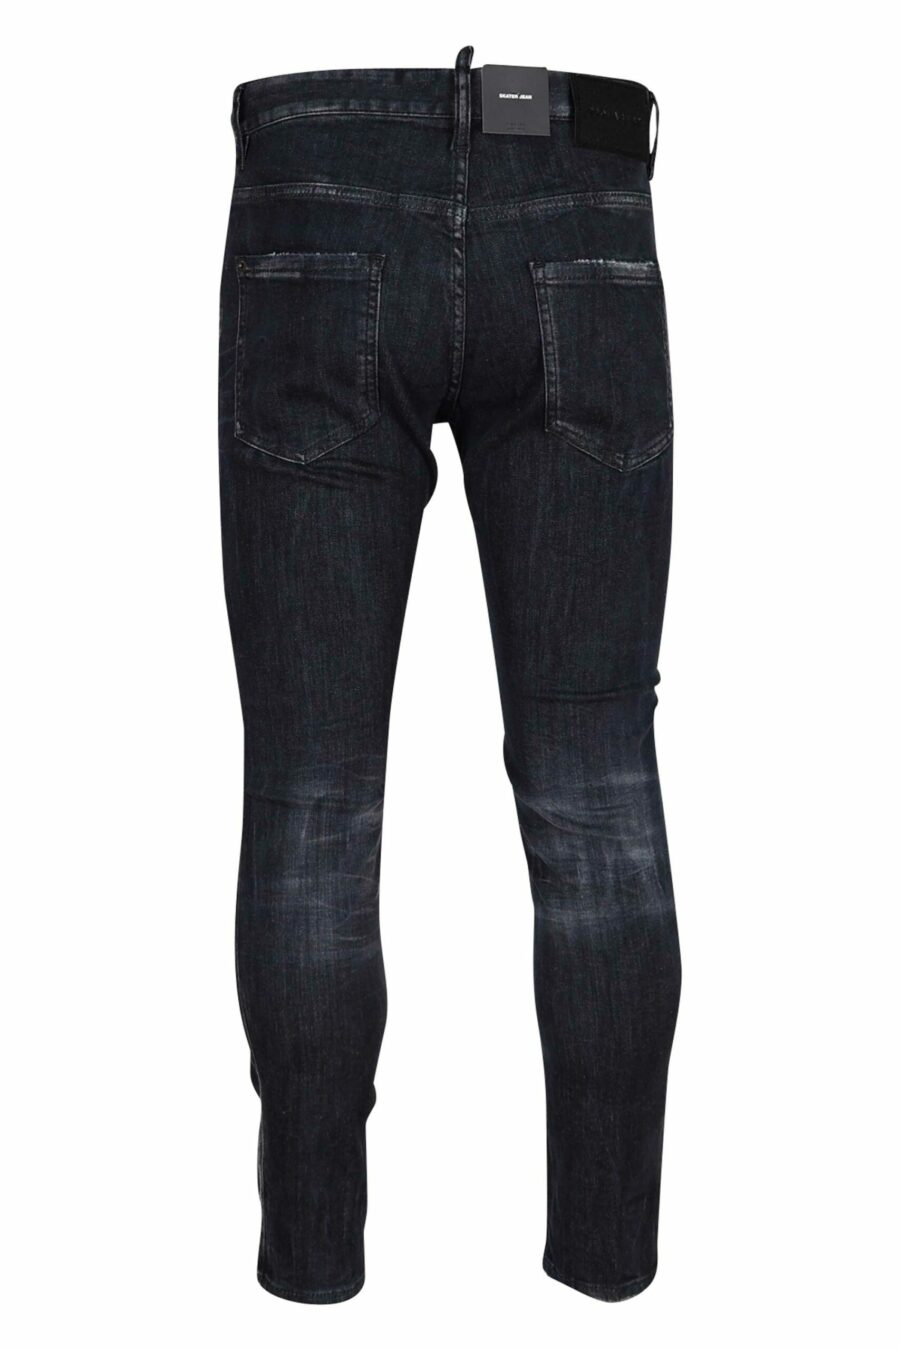 Halbgetragene schwarze "Skater-Jeans" - 8054148289591 2 skaliert